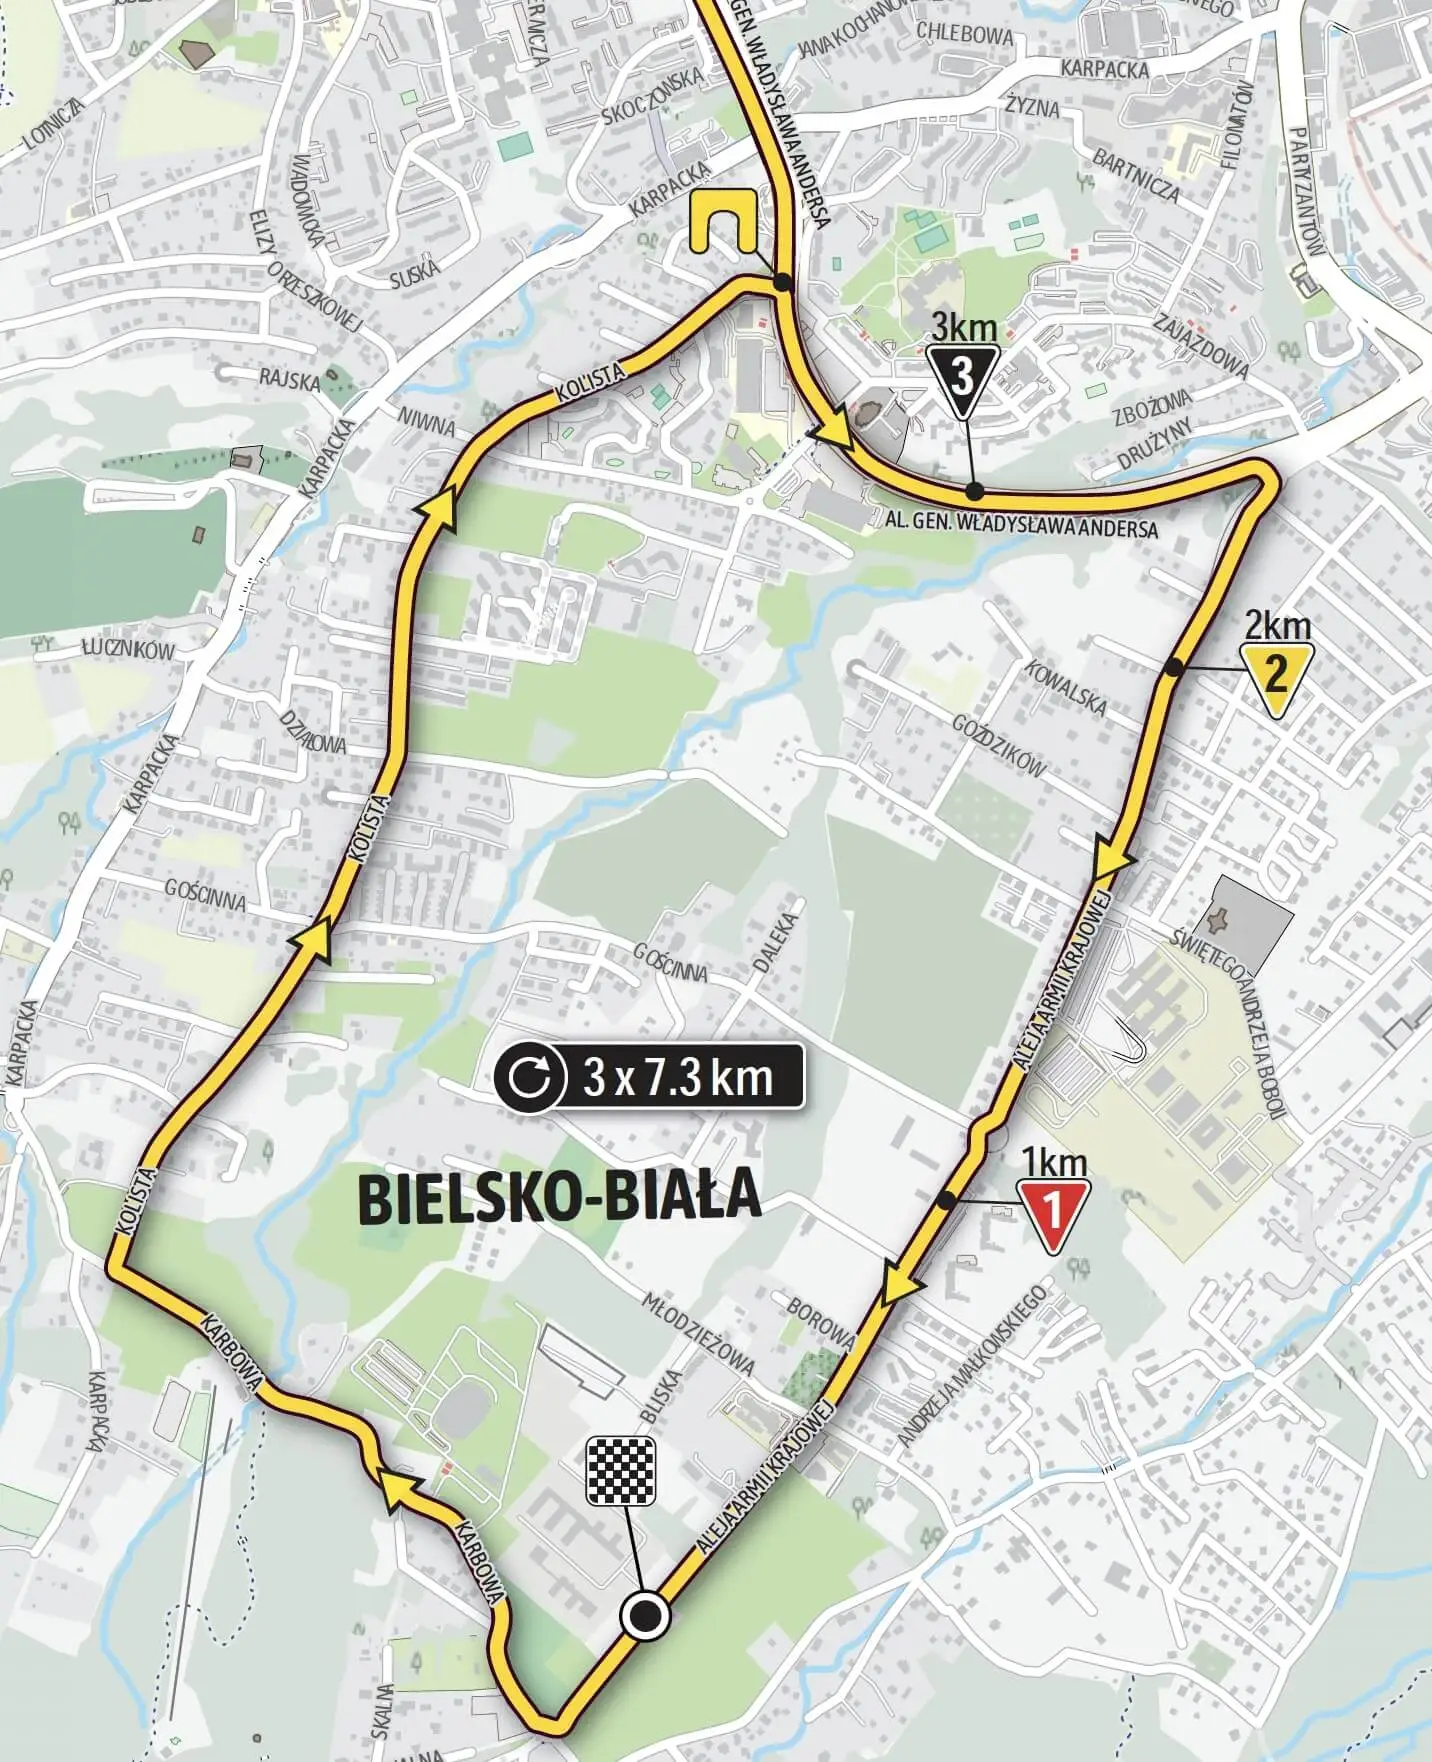 Bielsko Biała - Finish Tour de Pologne 2021